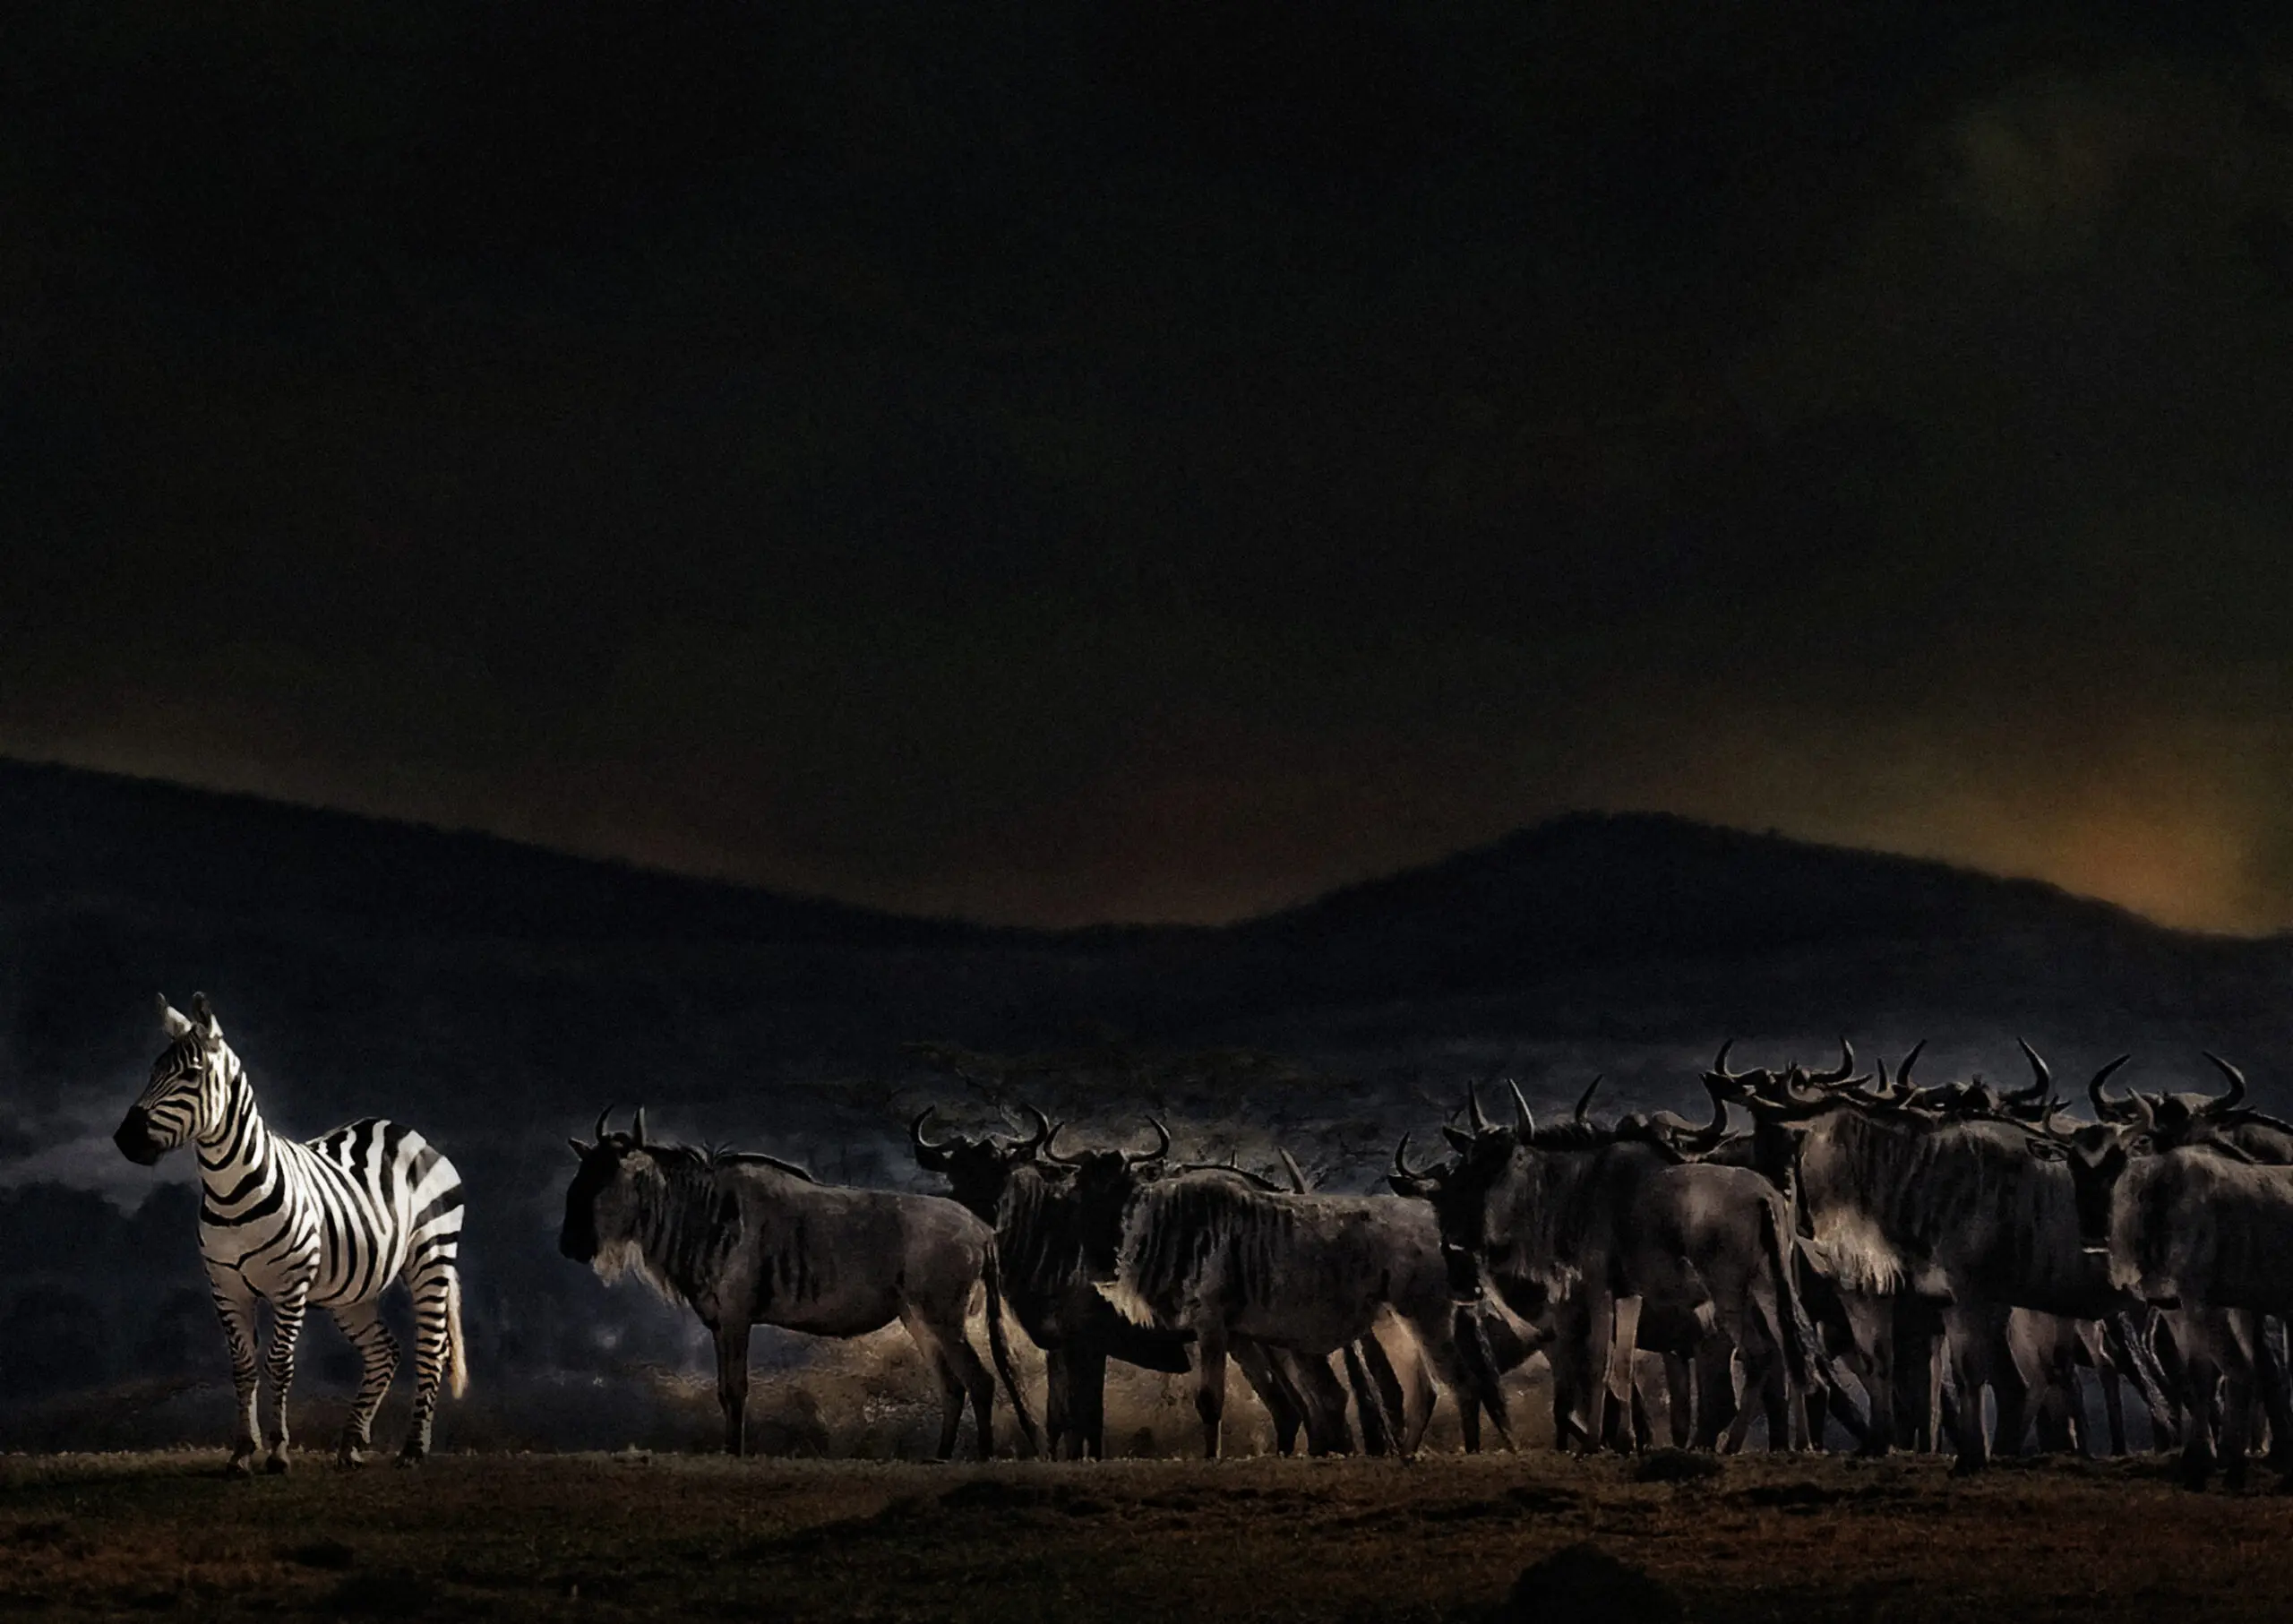 Wandbild (2819) an evening in Kenya präsentiert: Tiere,Aus Afrika